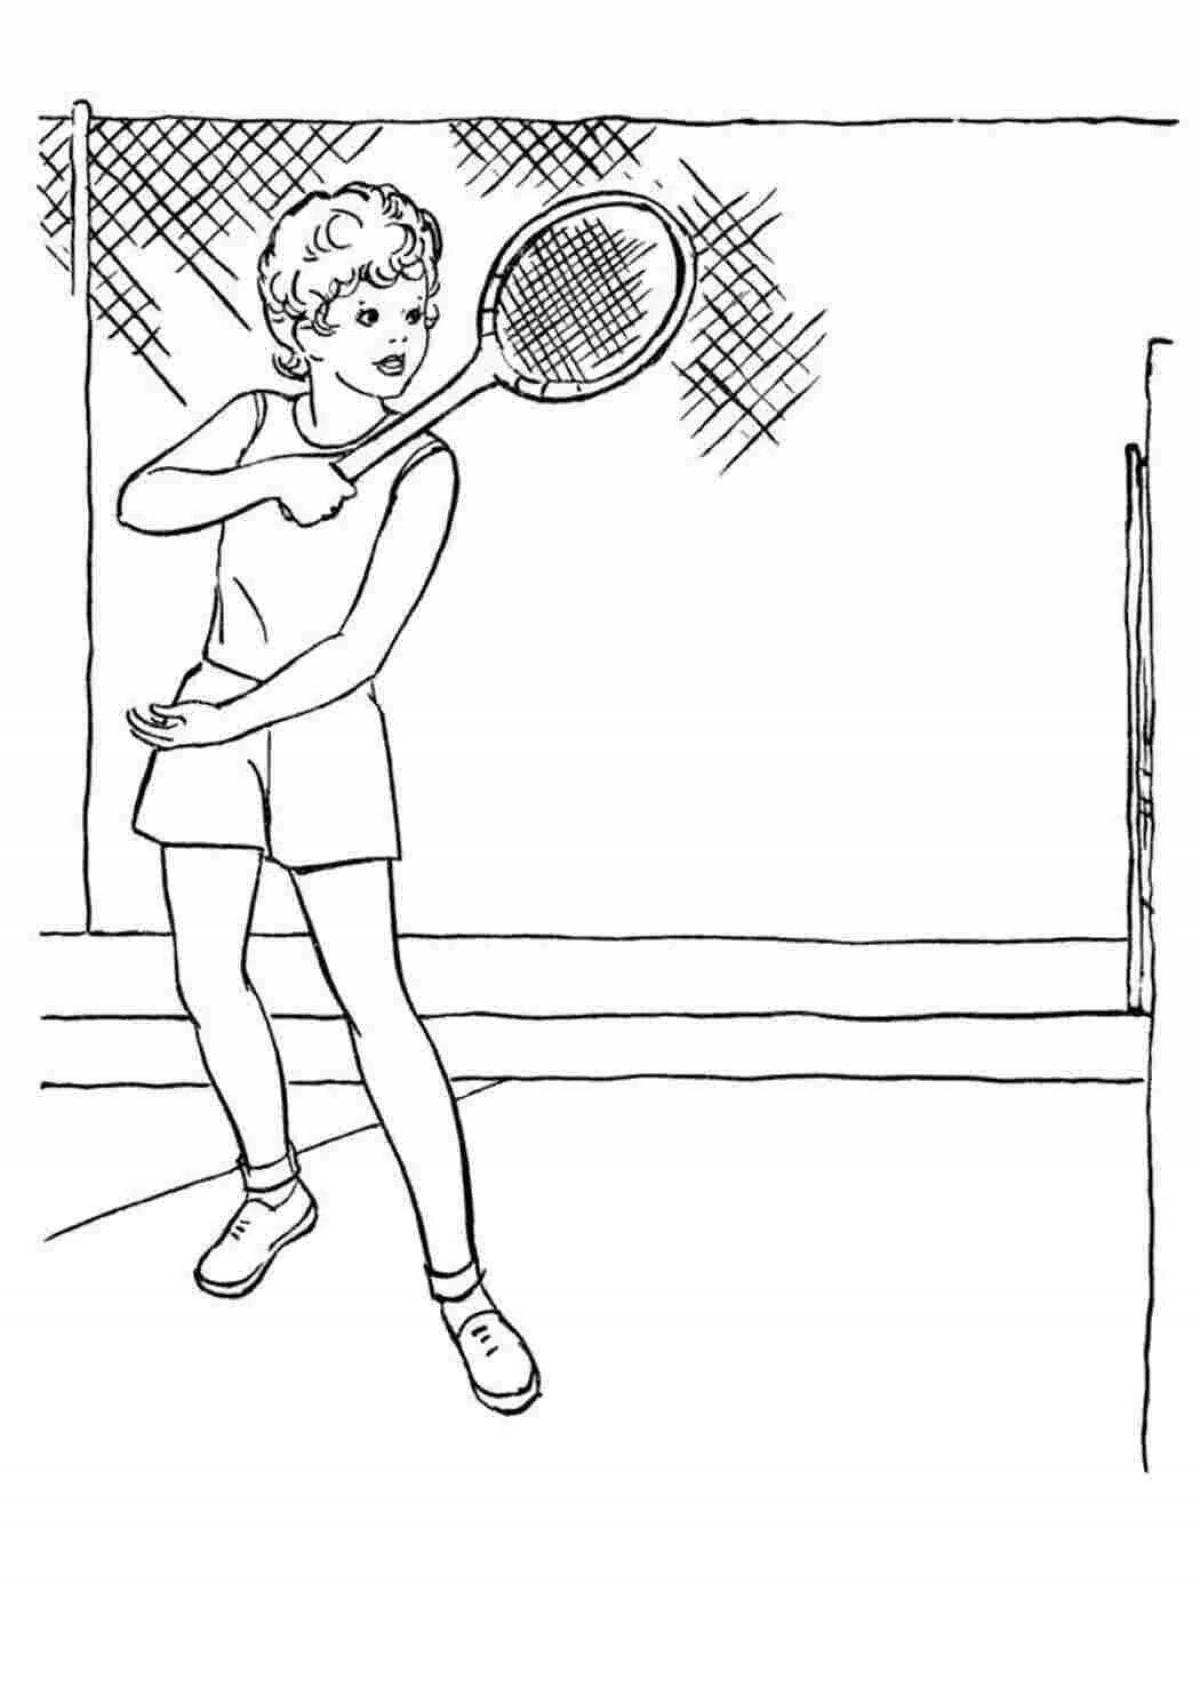 Радостная теннисная раскраска для детей